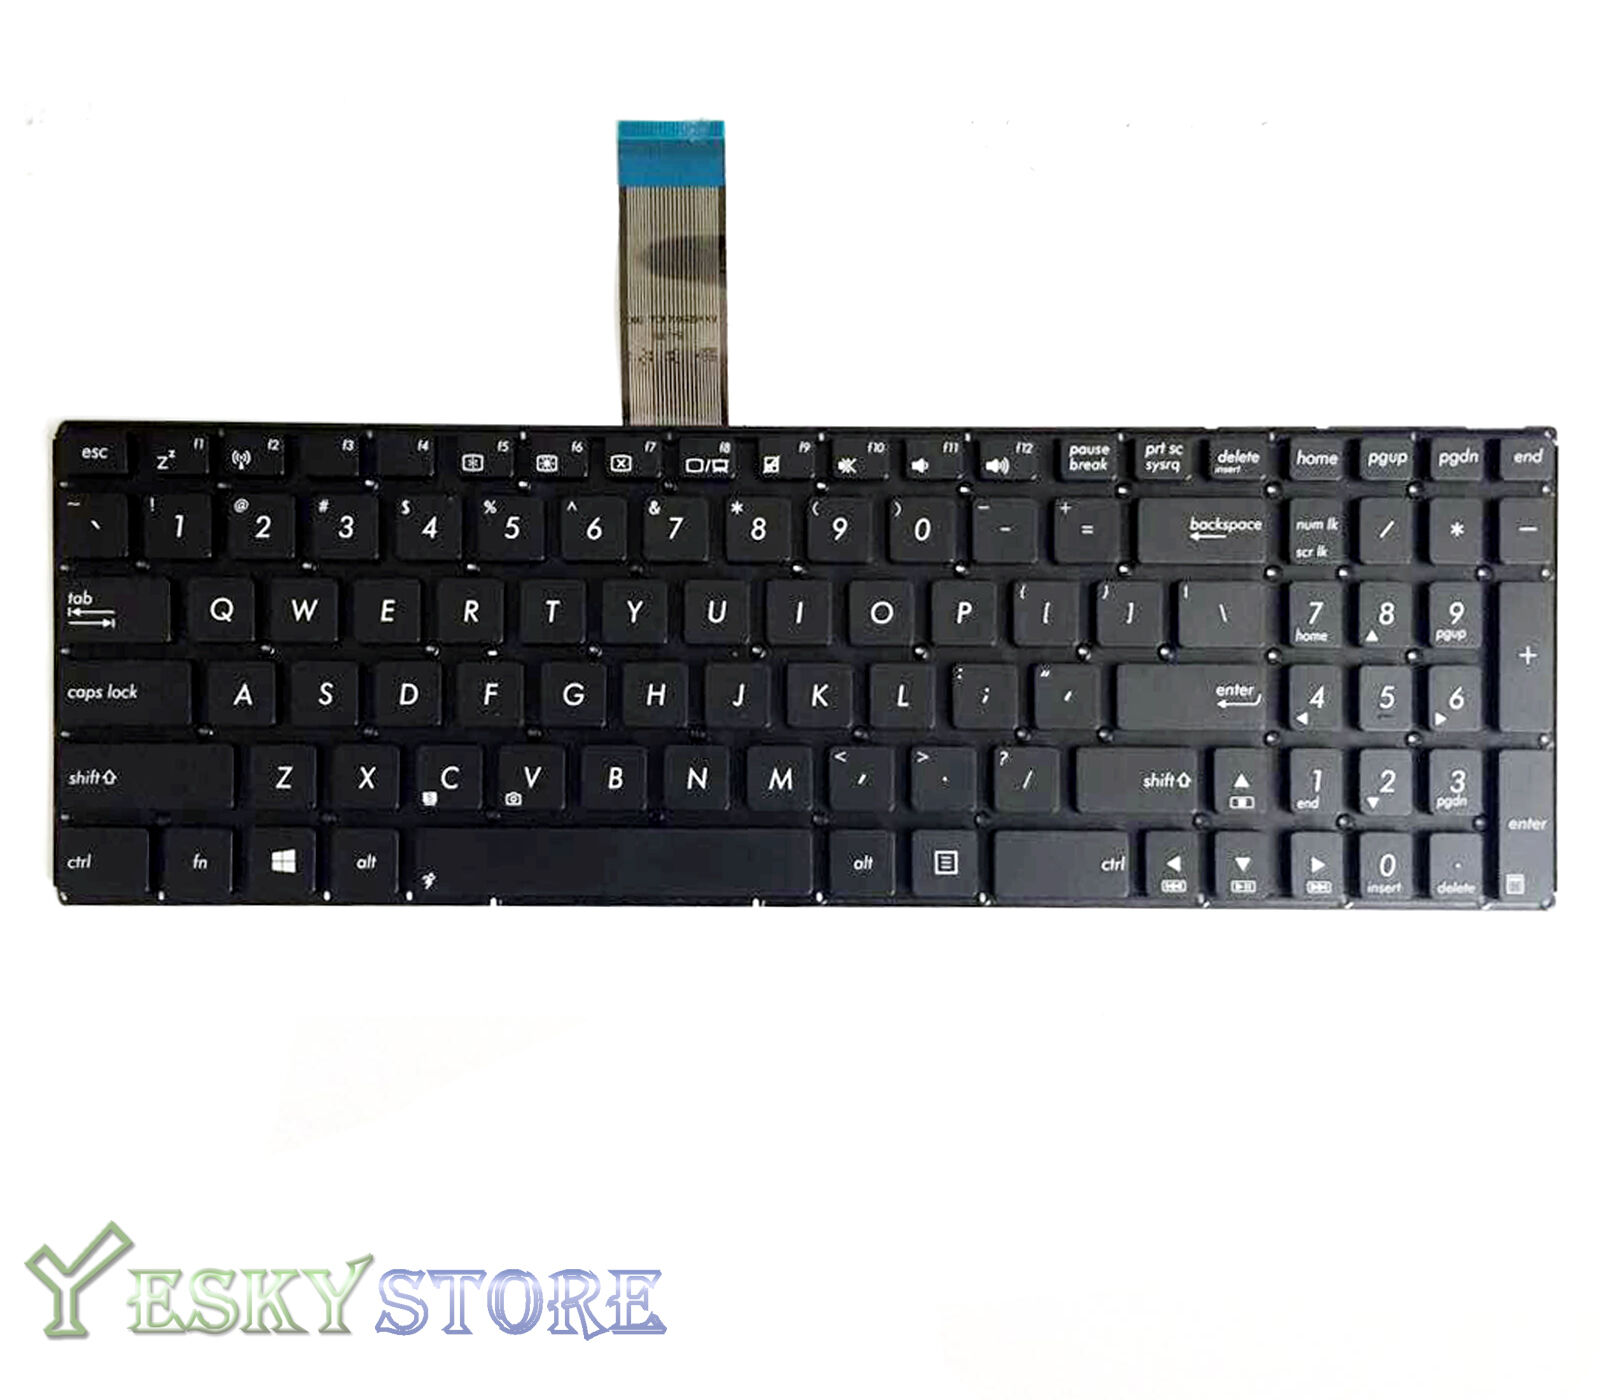 Bàn phím - Keyboard Laptop Asus S300CA